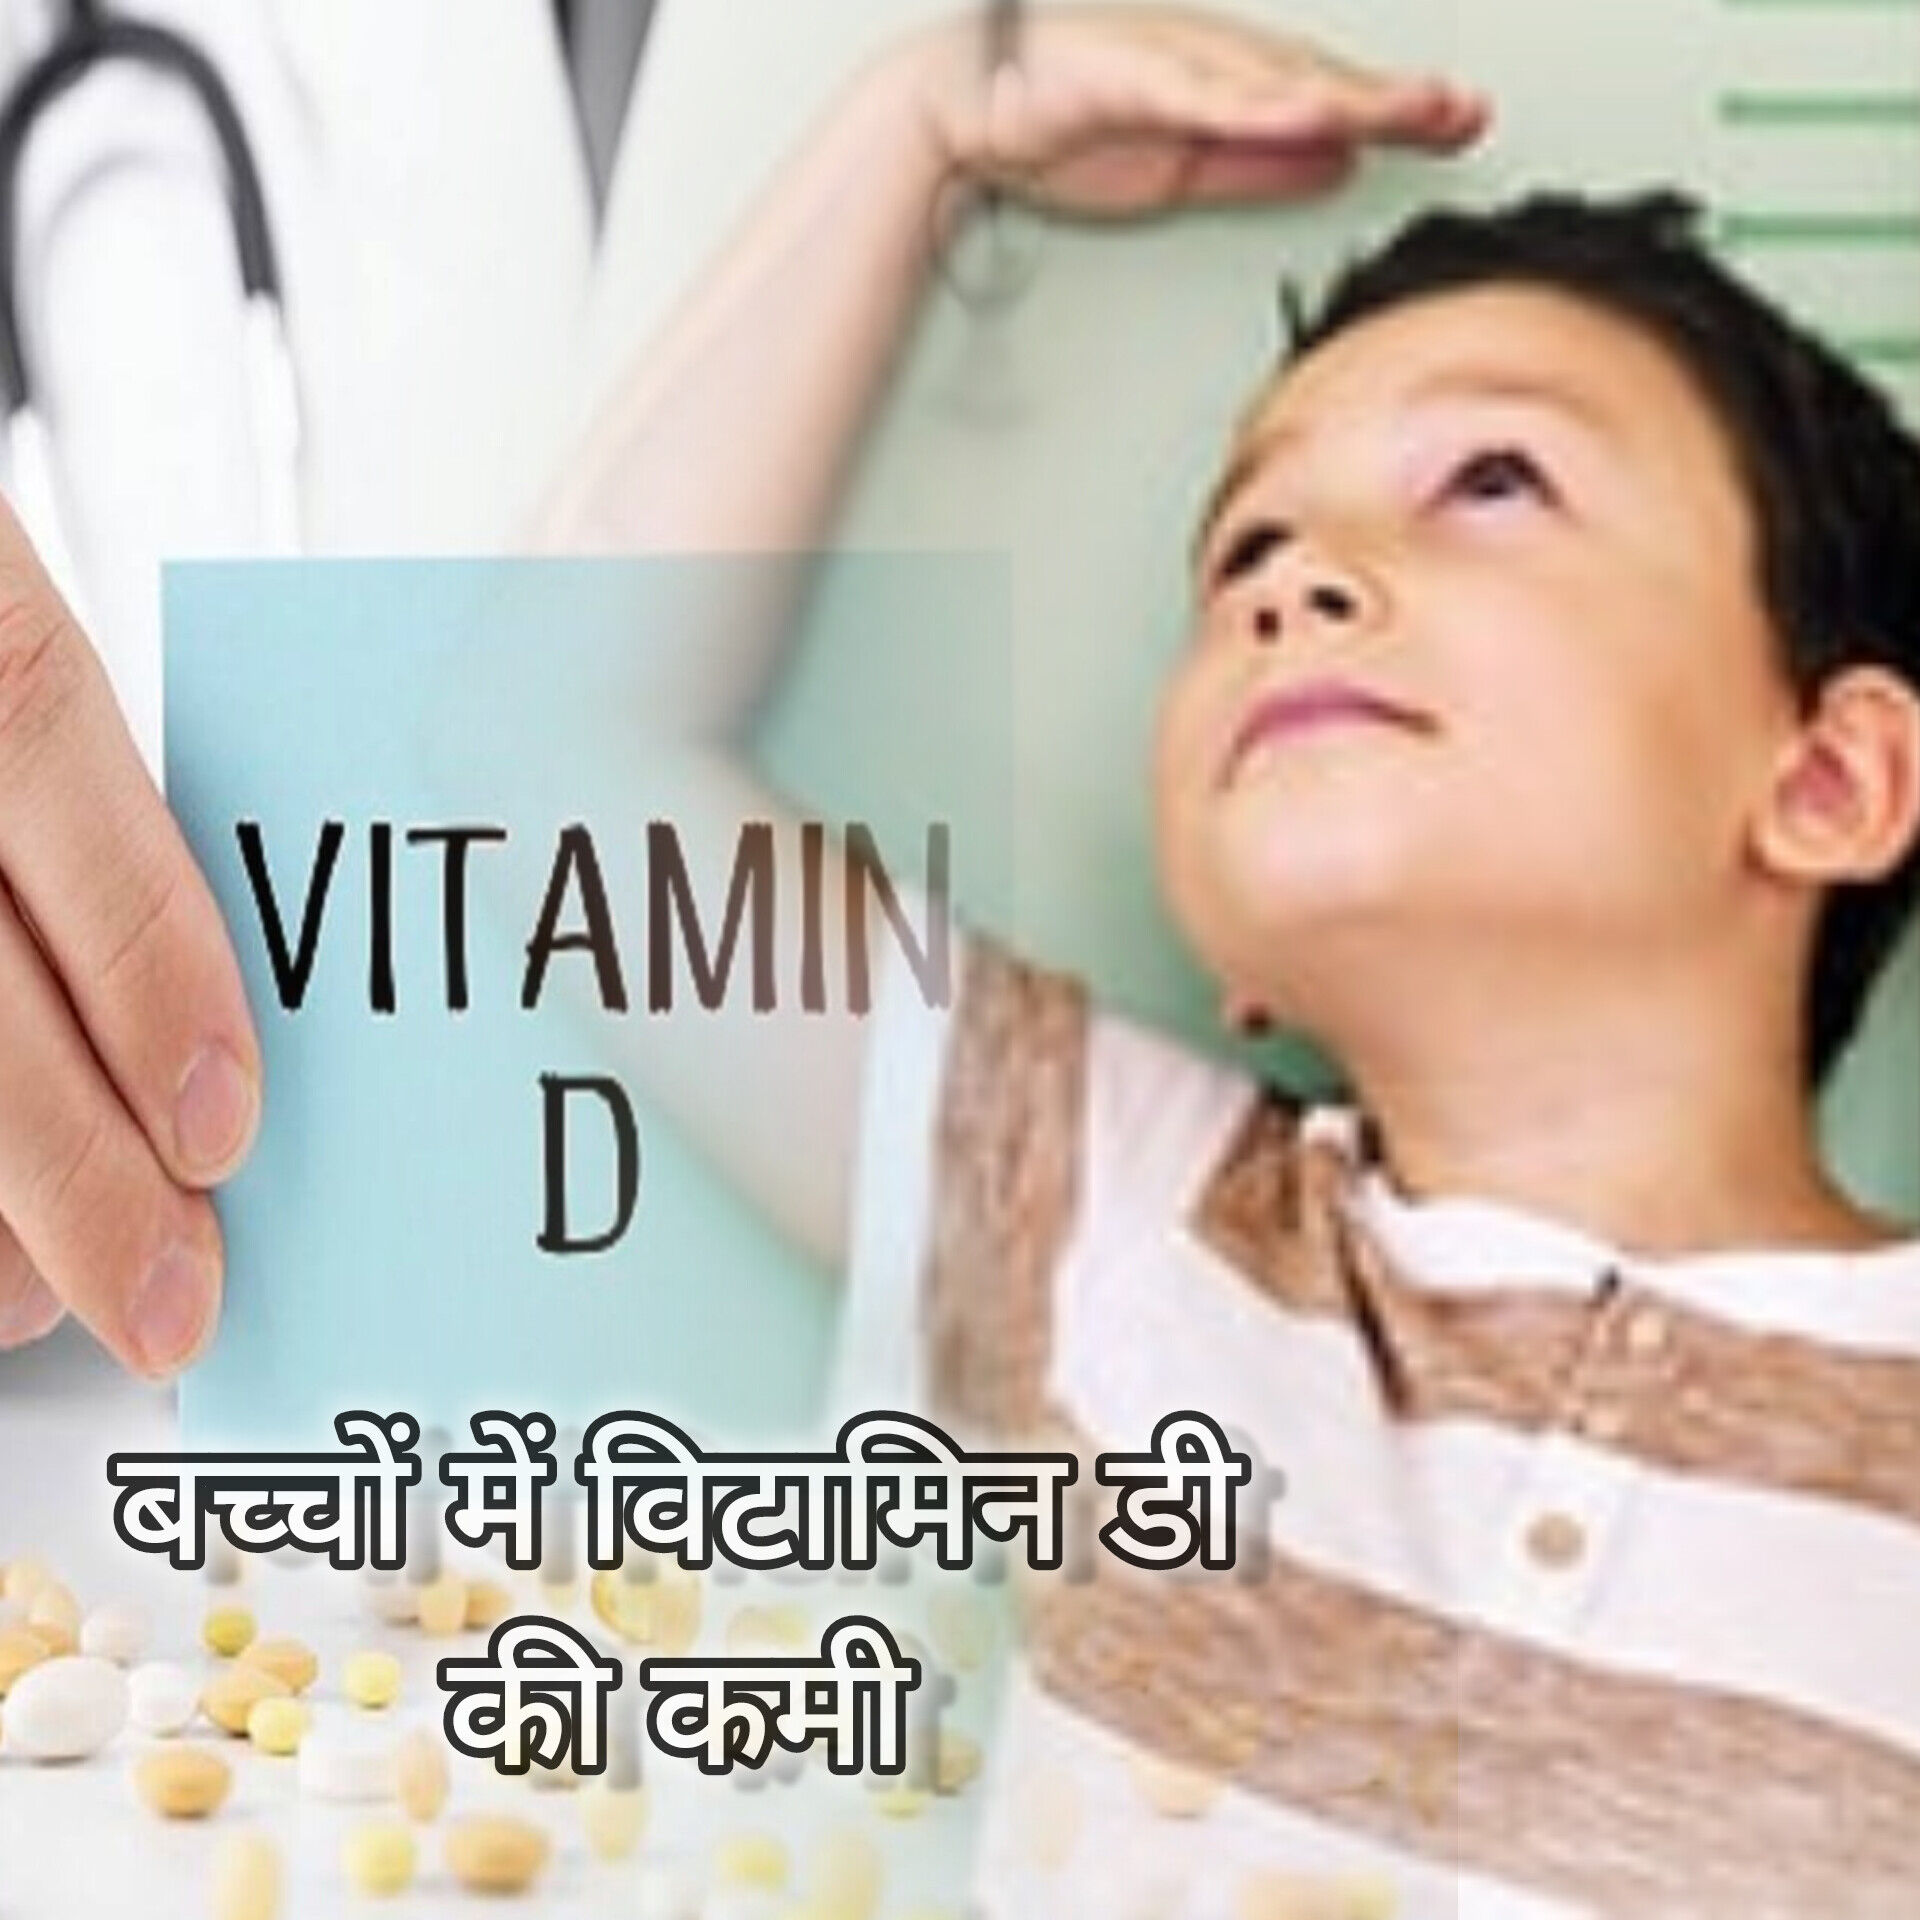 बच्चों में विटामिन डी की कमी: लक्षण, कारण और उपचार